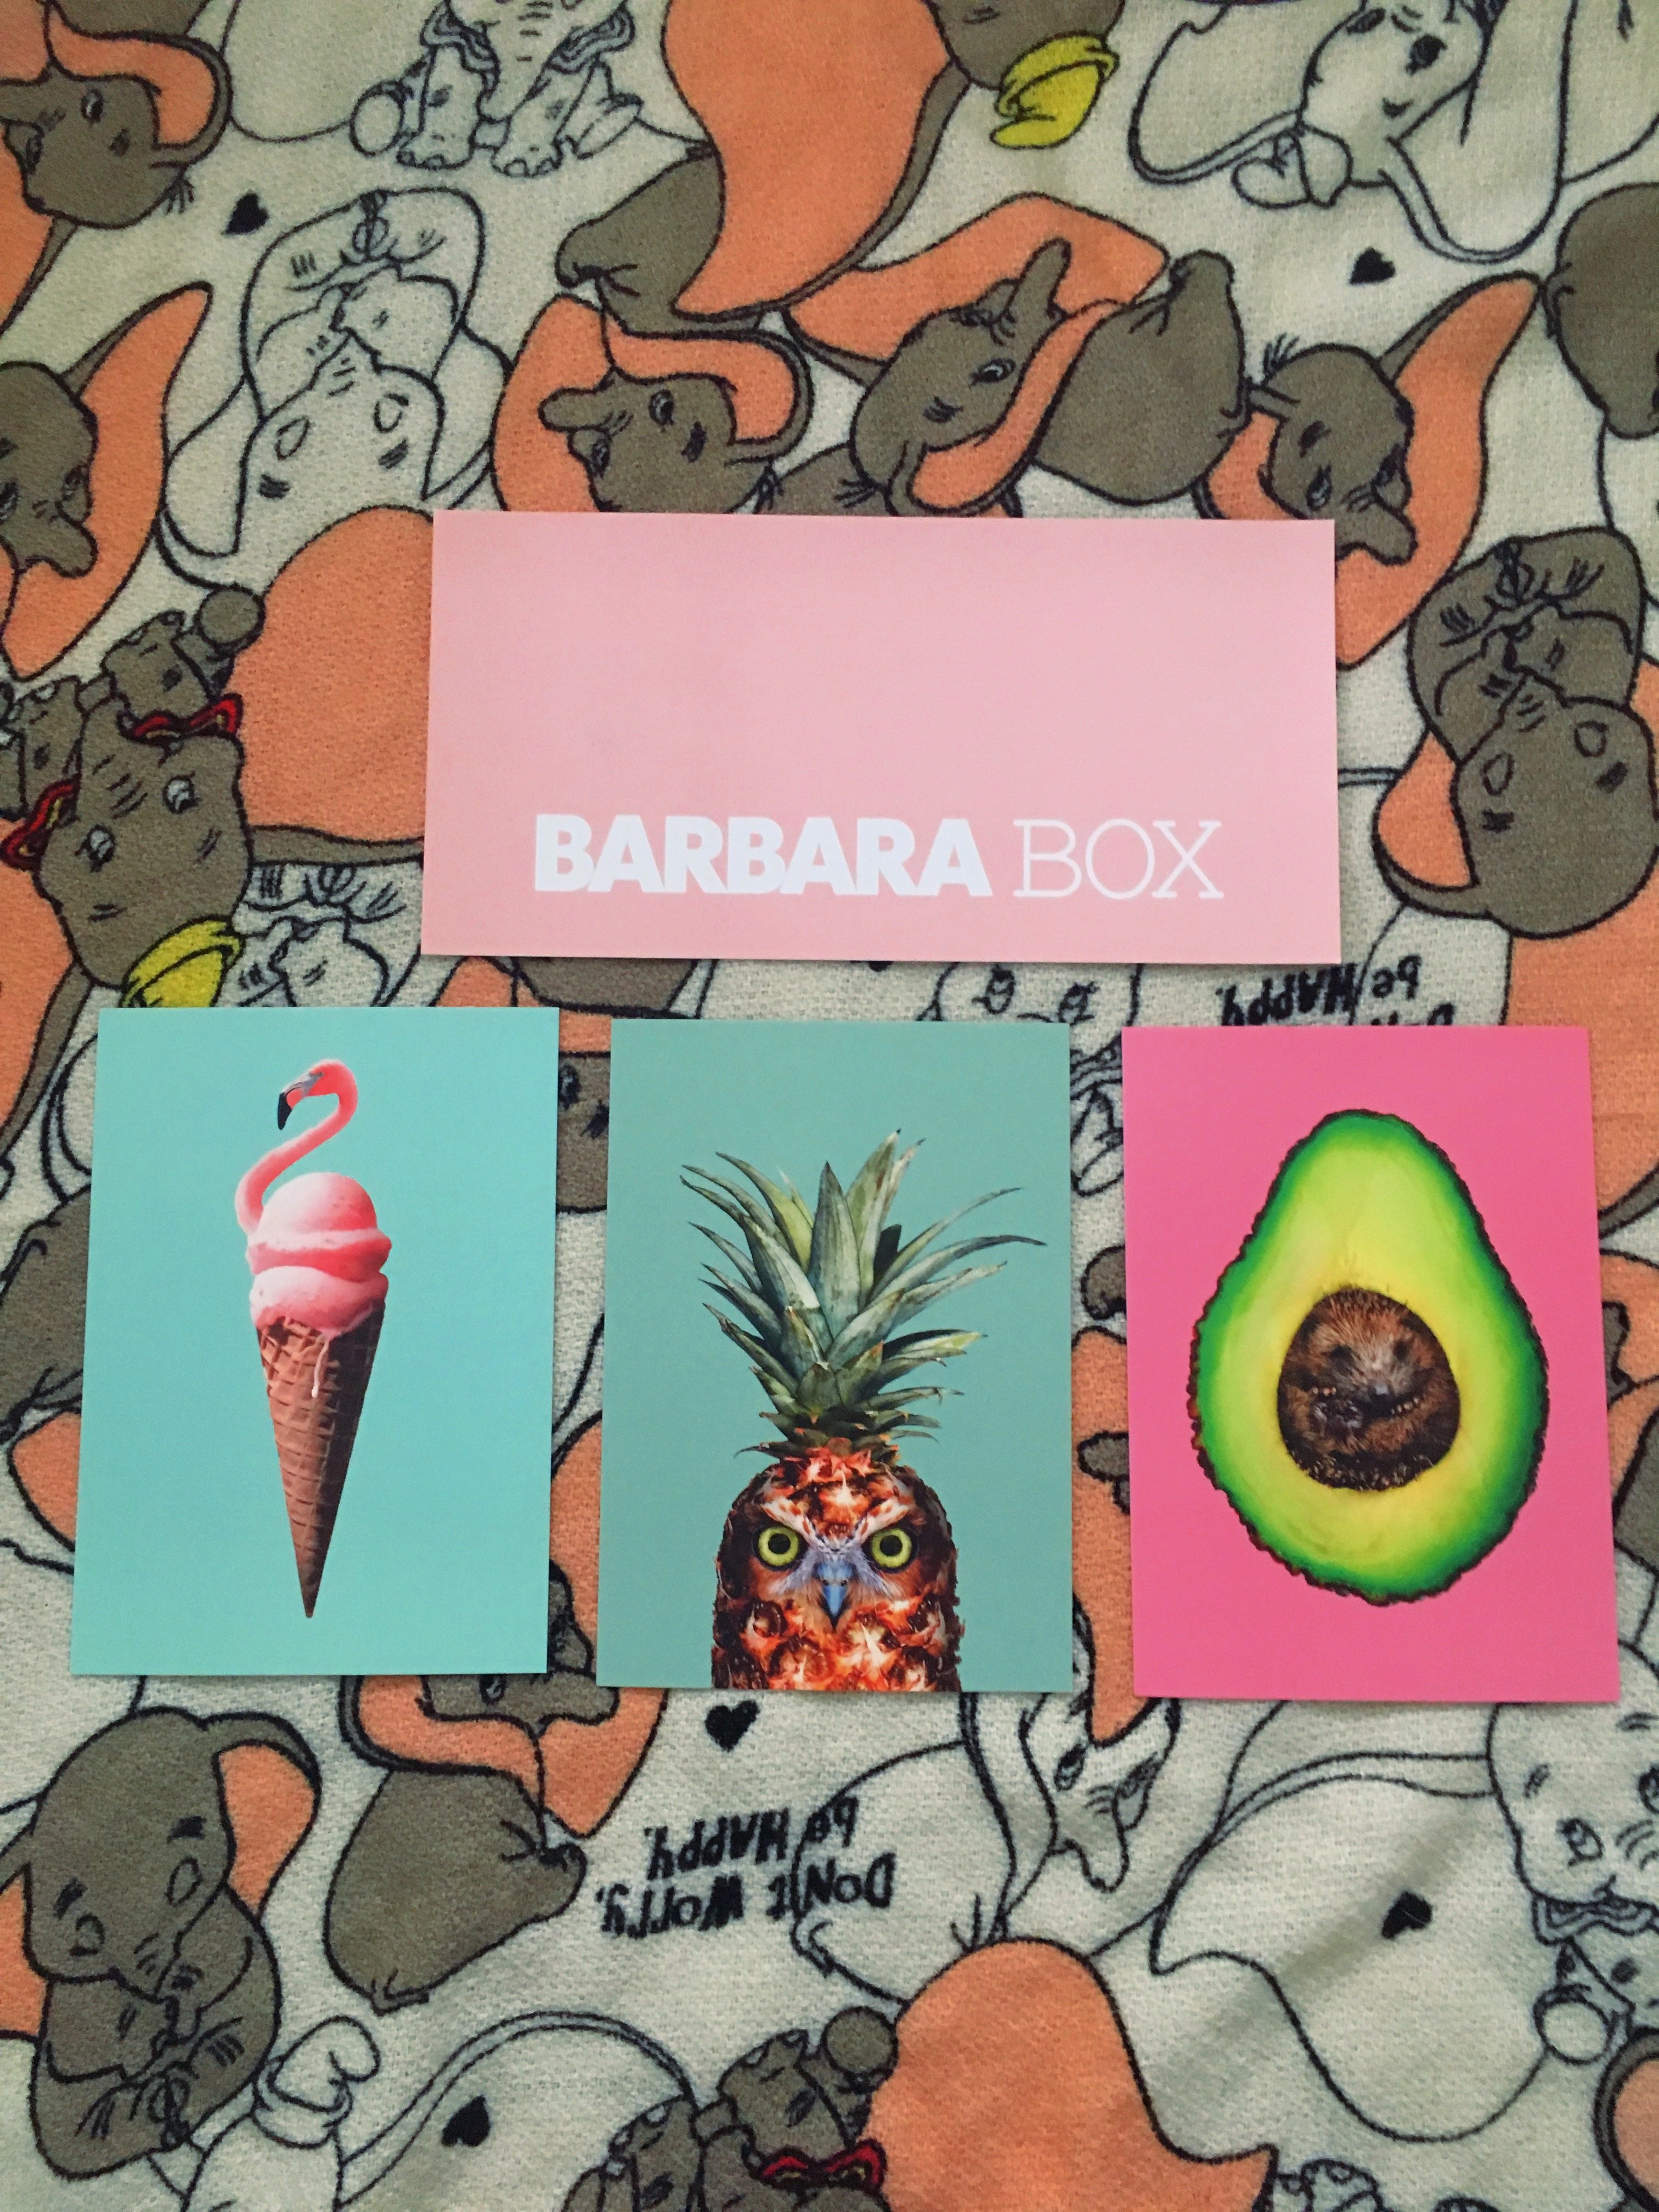 Heute stelle ich euch auf meinem Blog die aktuelle Barbara Box Wellness-Wochenede Edition näher vor und zeige euch alle enthaltenen top Produkte im Detail